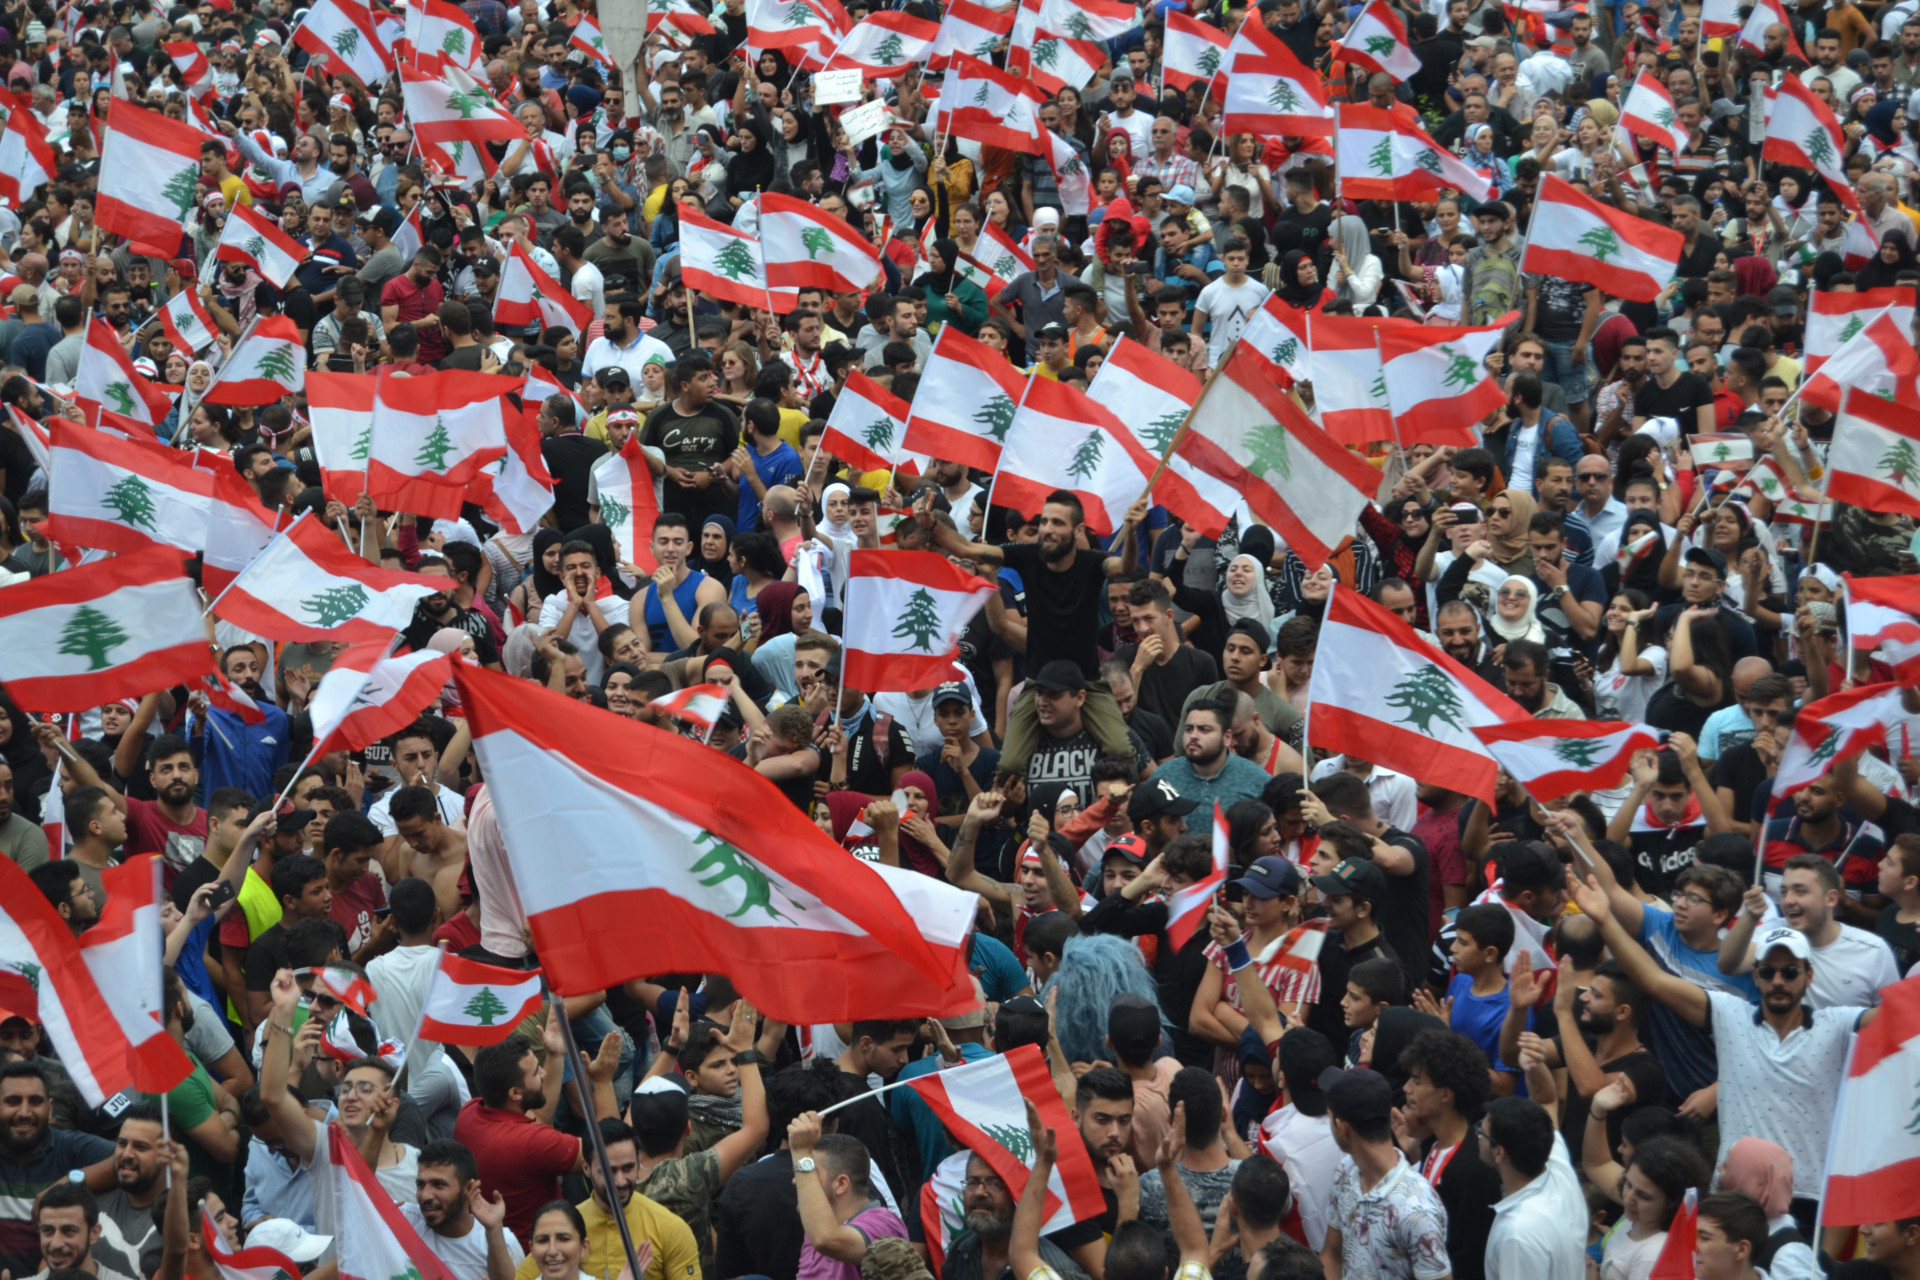 LEBANON-DEMONSTRATION-PROTESTERS|Nav 56